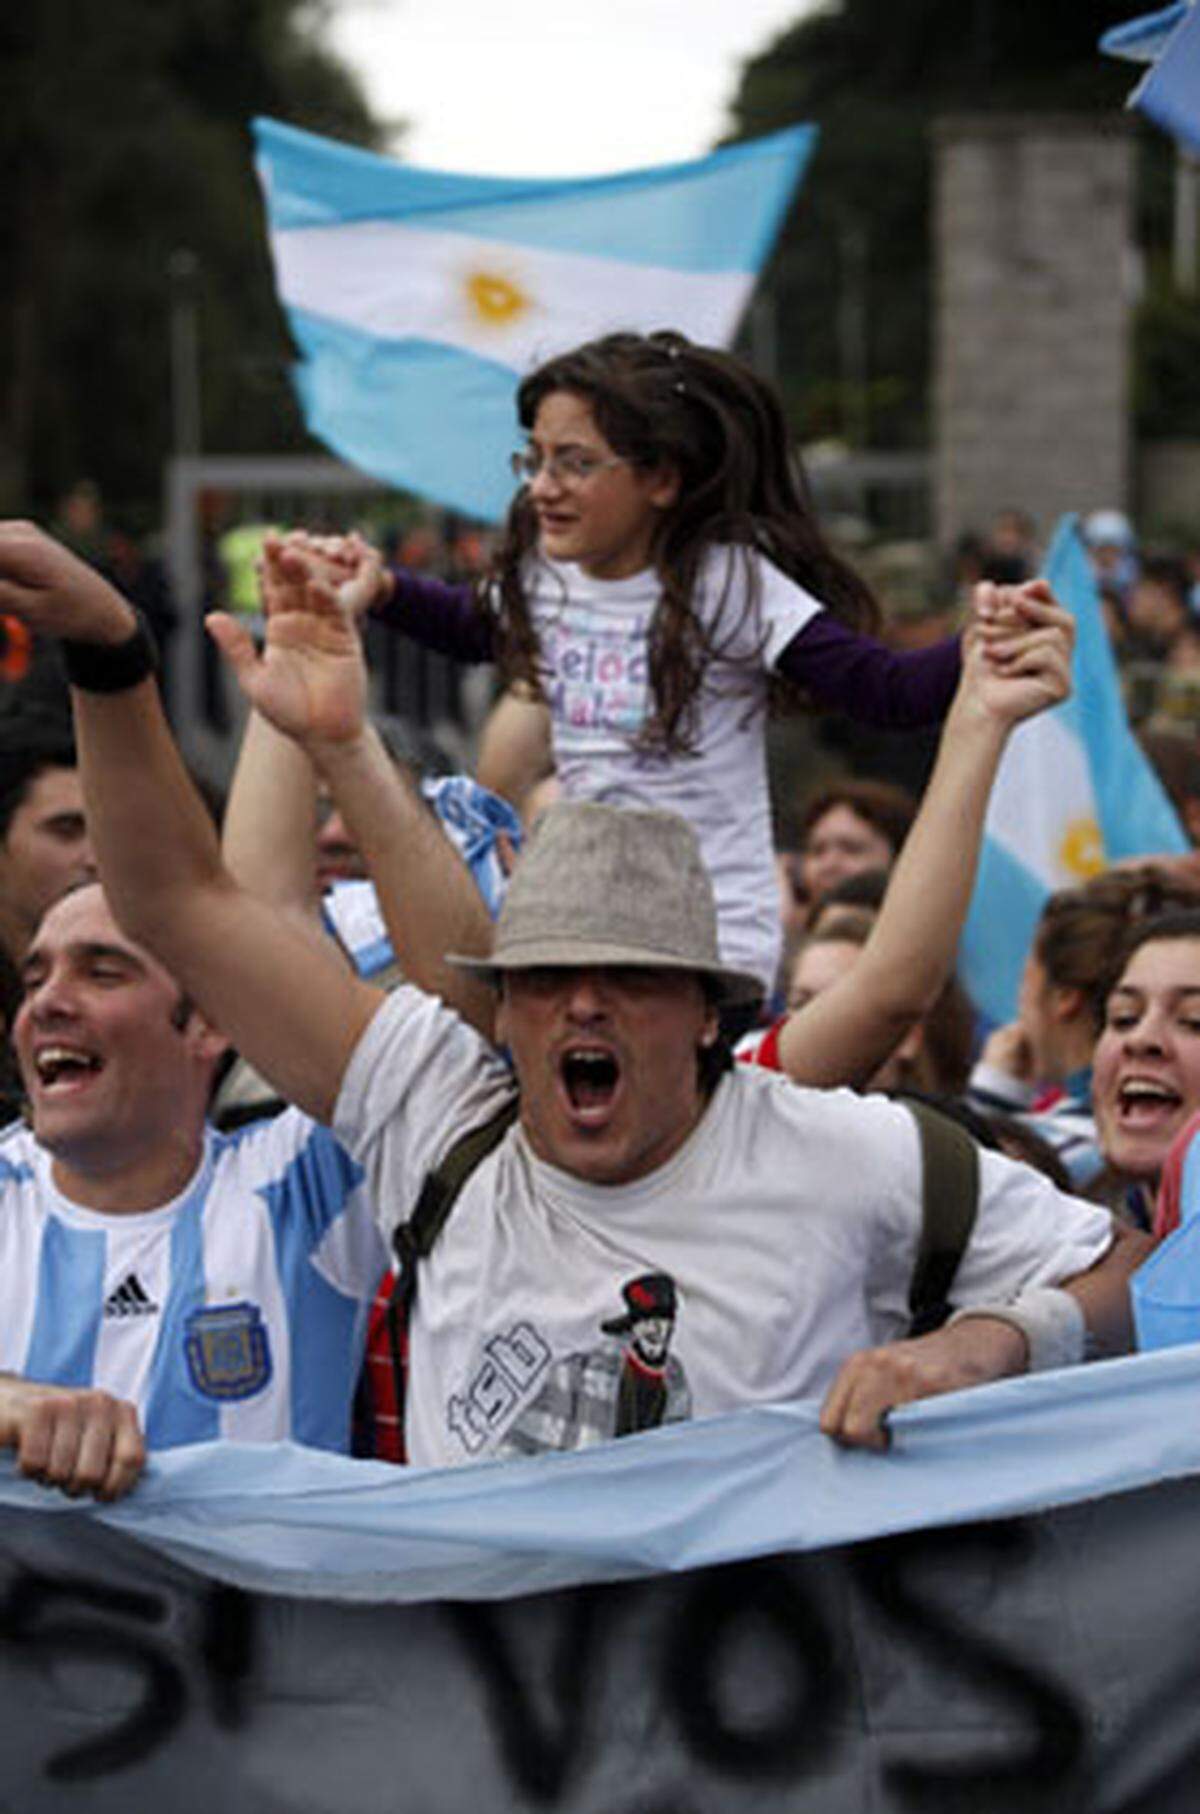 Argentiniens Fans verziehen schnell. Bei der Rückkehr des WM-Teams war die Stimmung schon wieder recht positiv.